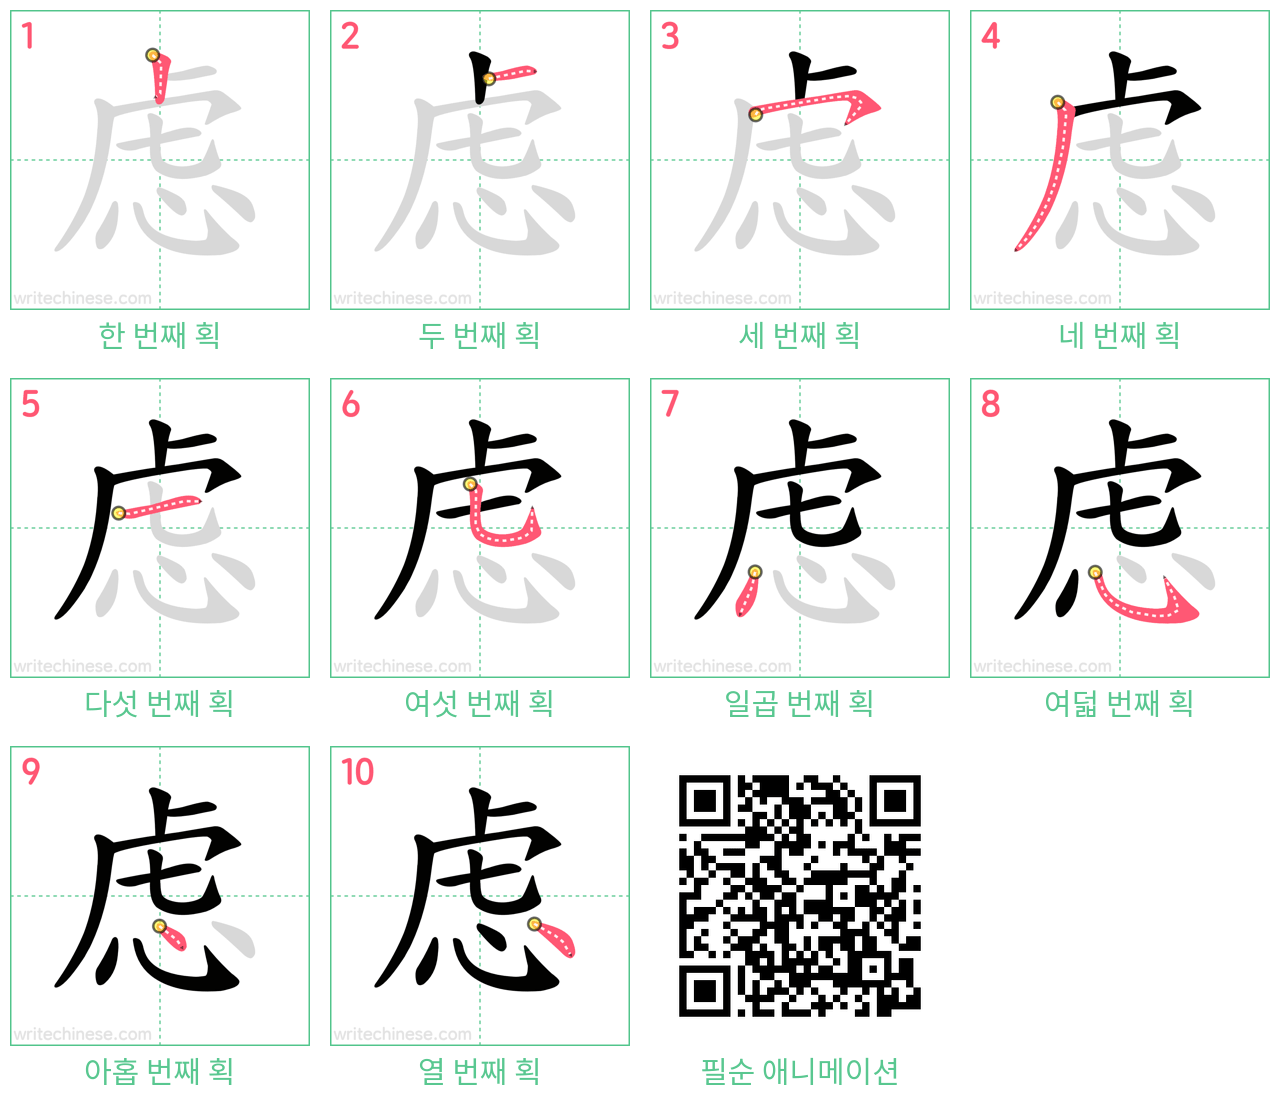 虑 step-by-step stroke order diagrams